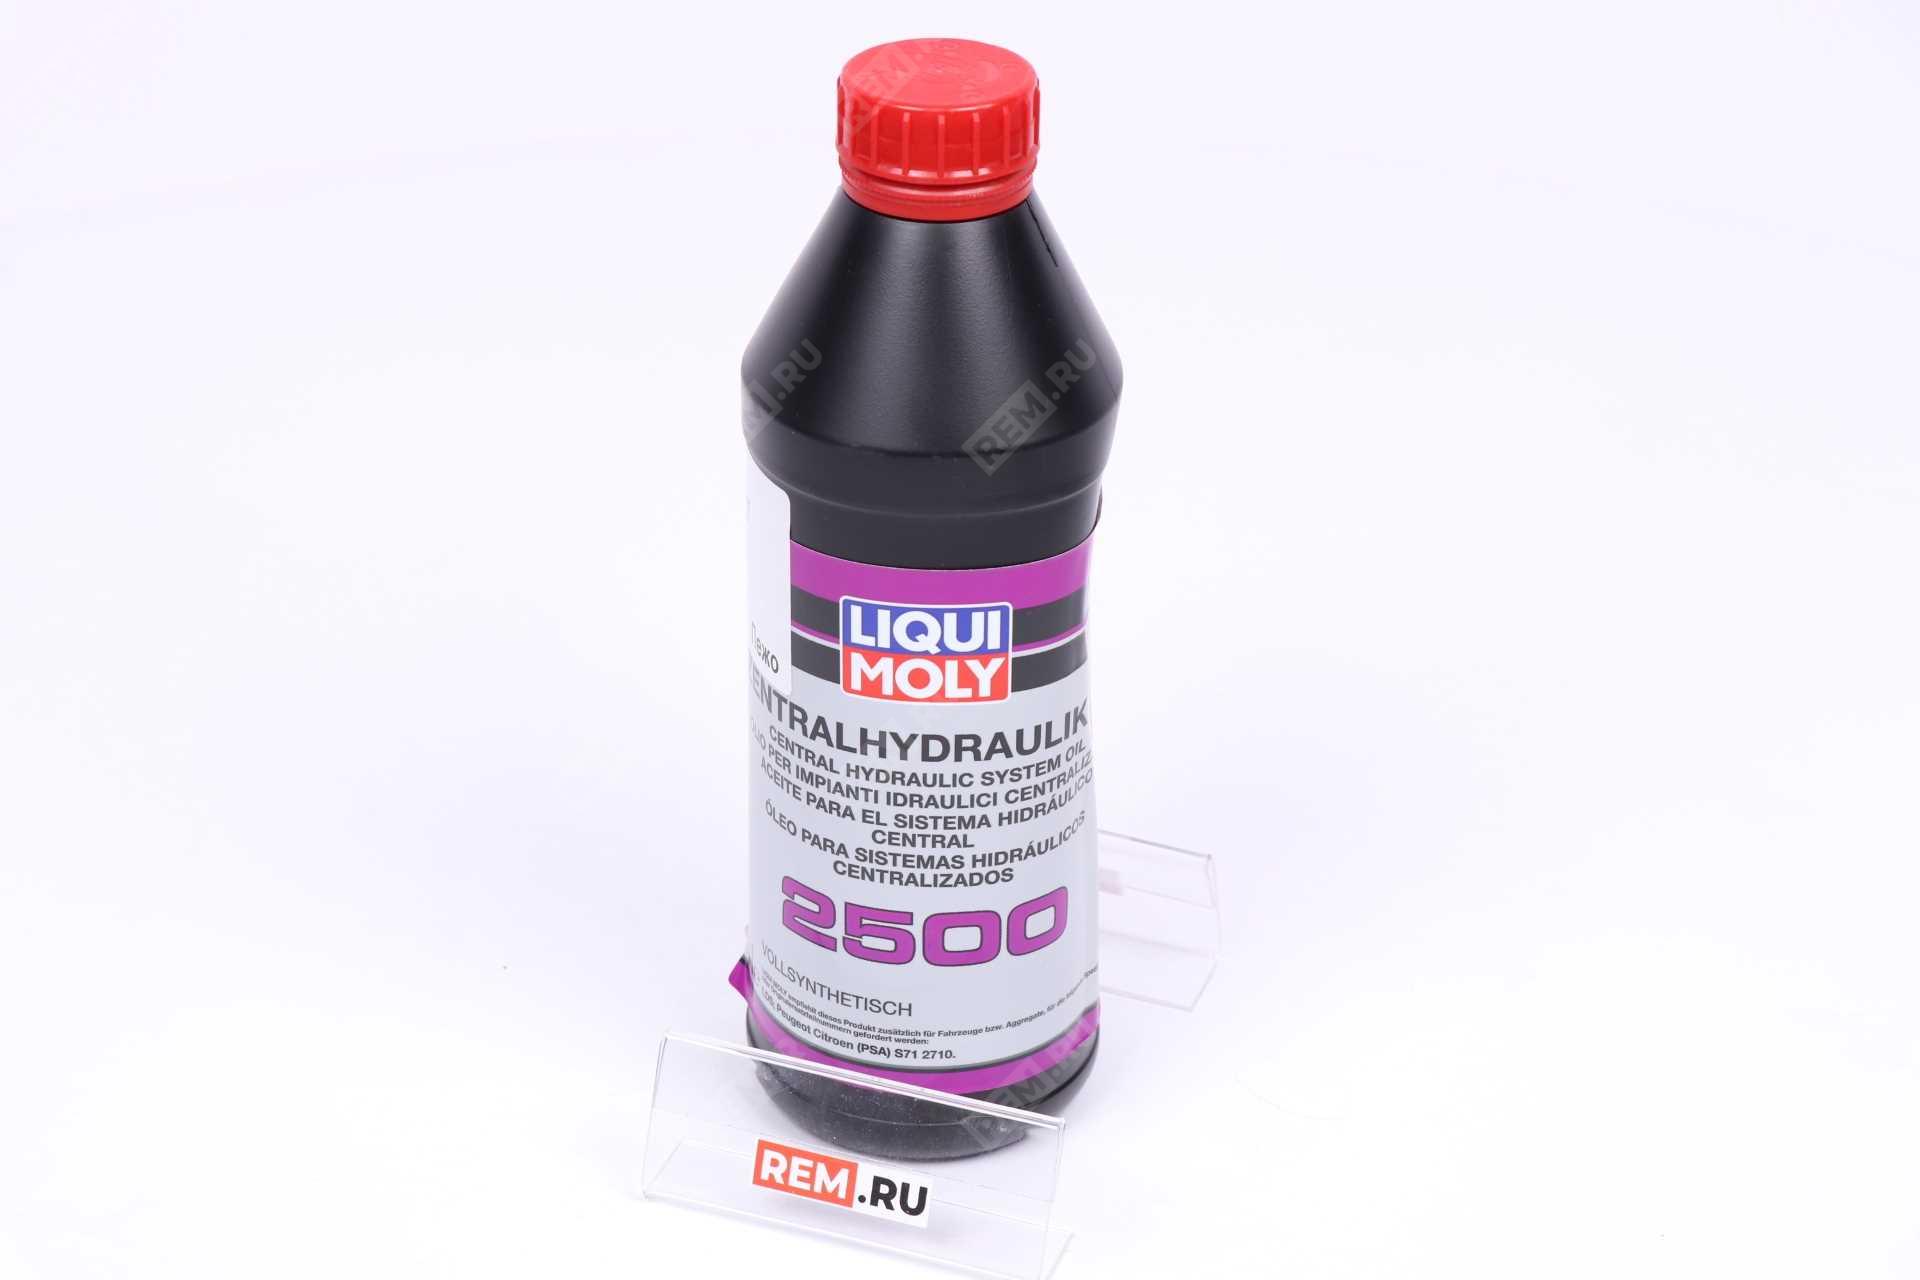  DLM0003667 жидкость гидравлическая liqui moly  zentralhydraulik 2500, 1л